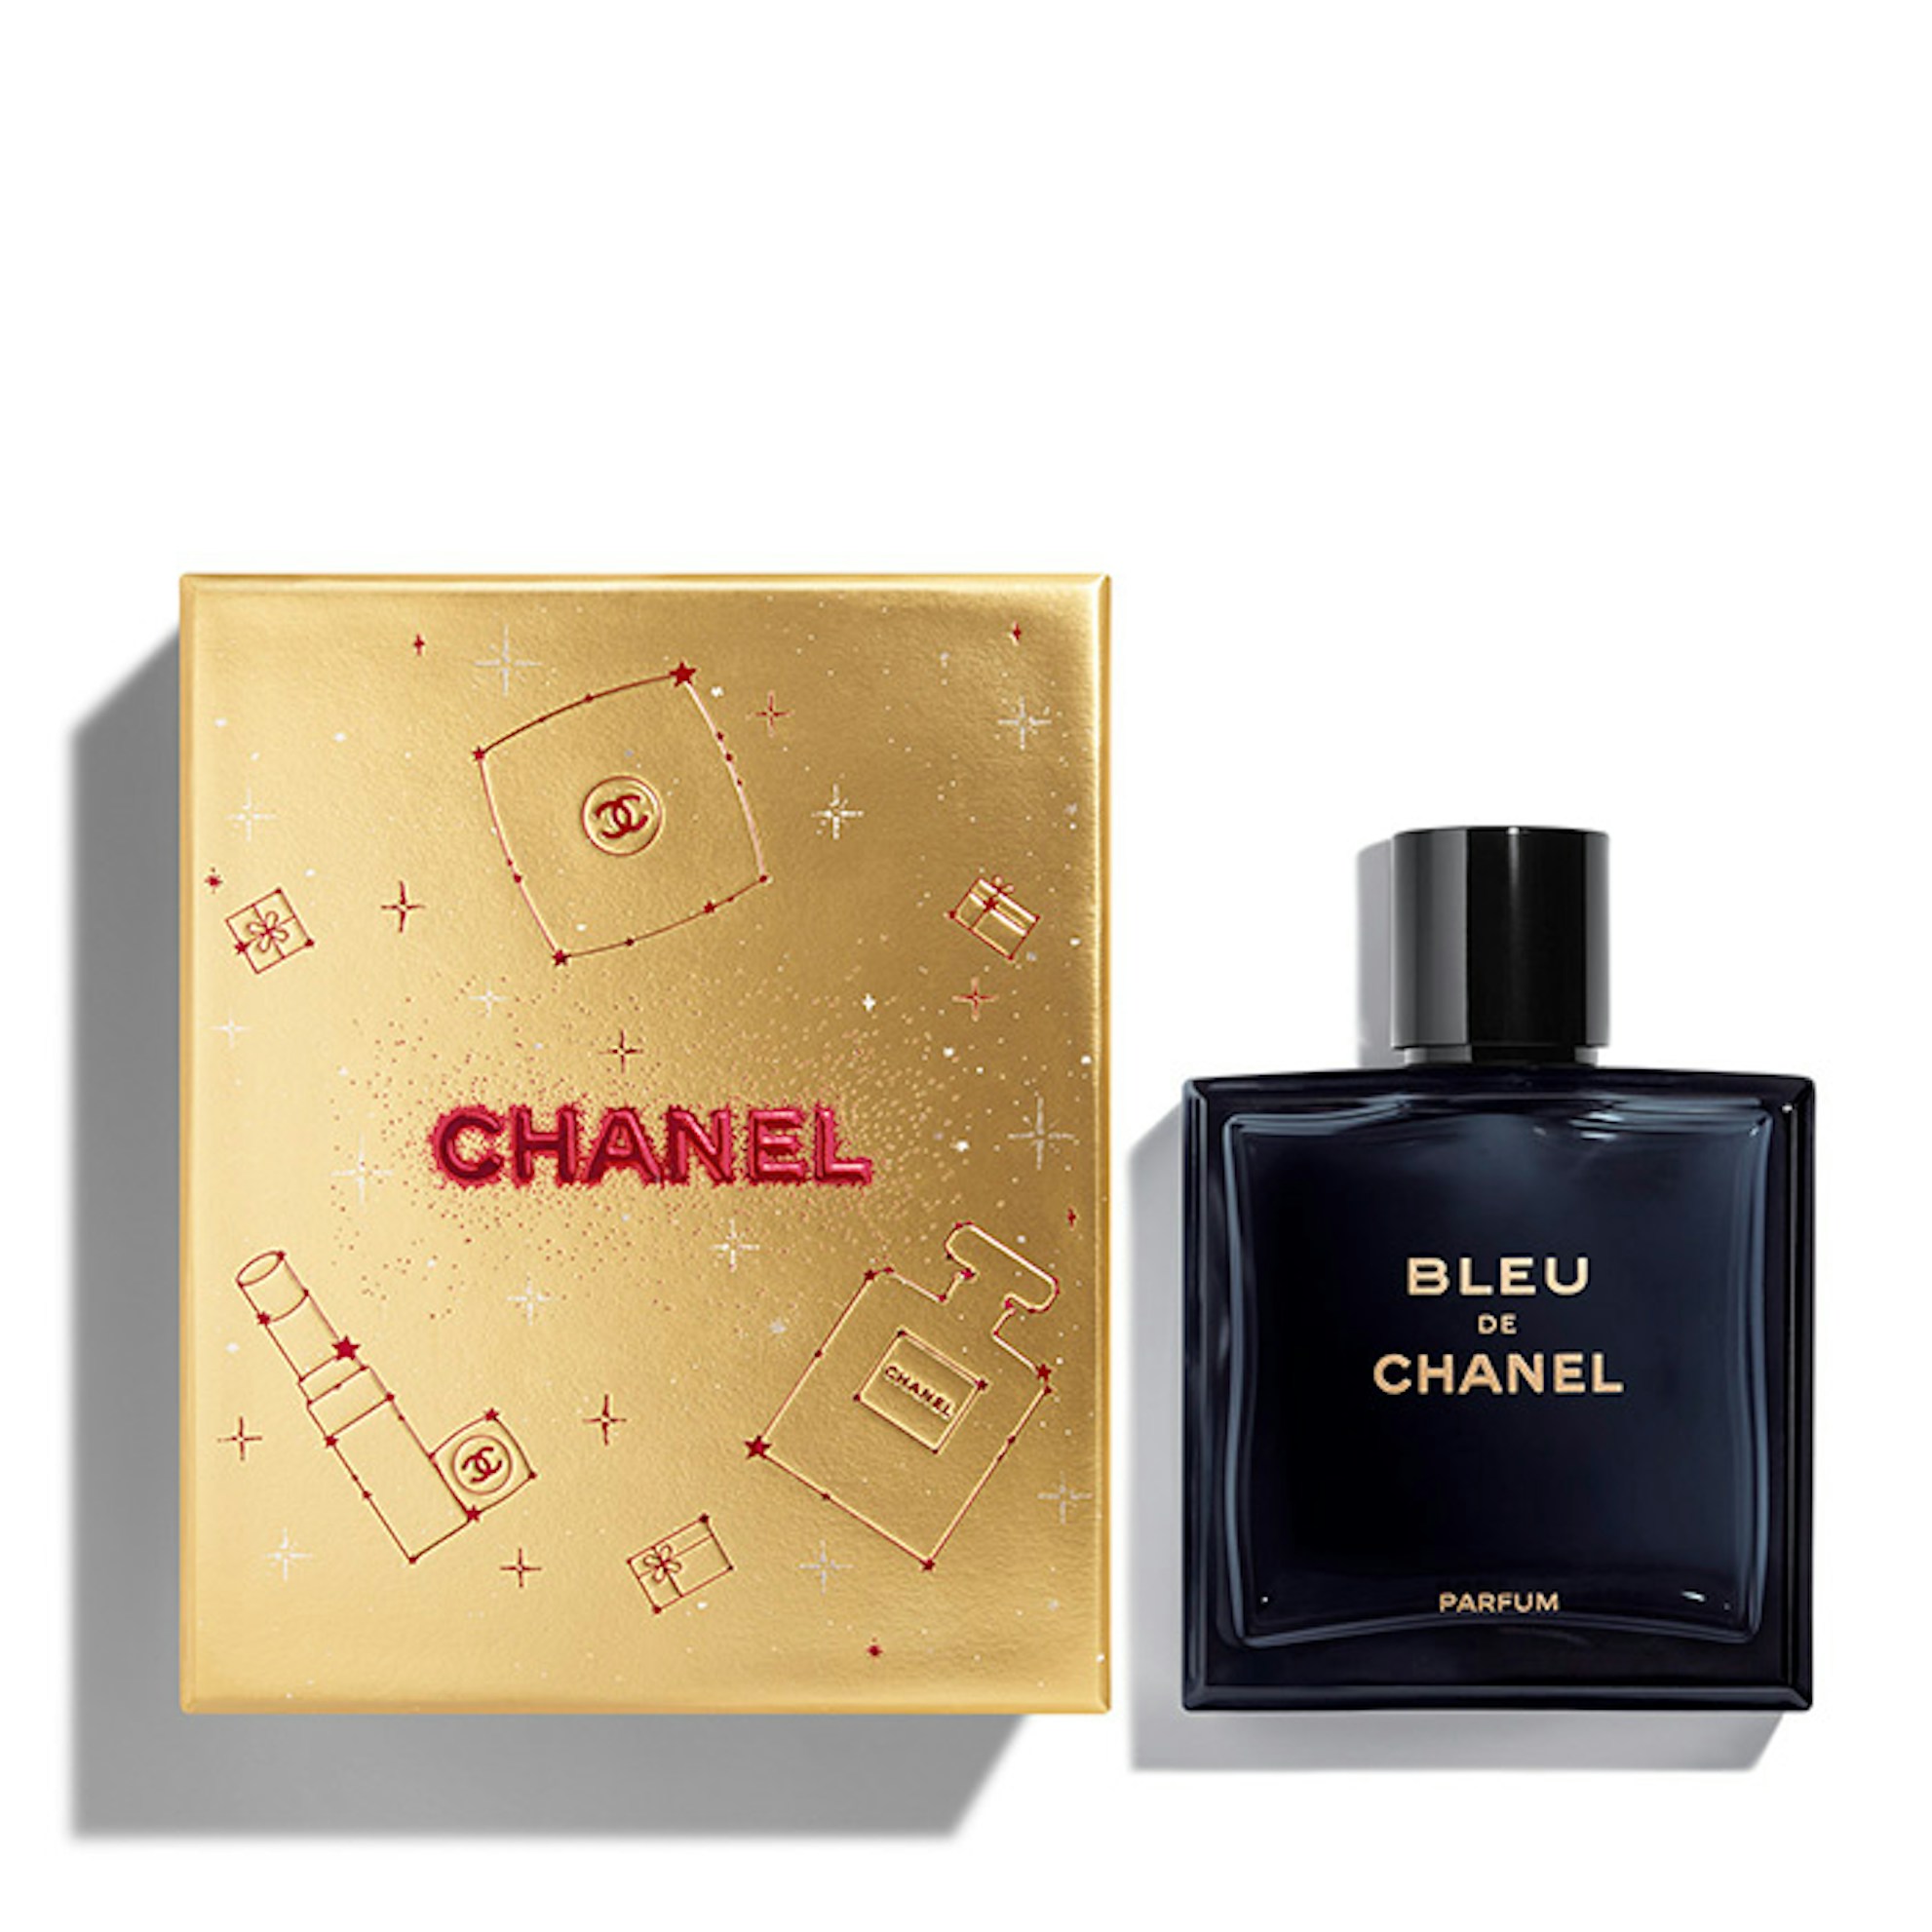 Bleu De Chanel Parfum 100ml Spray